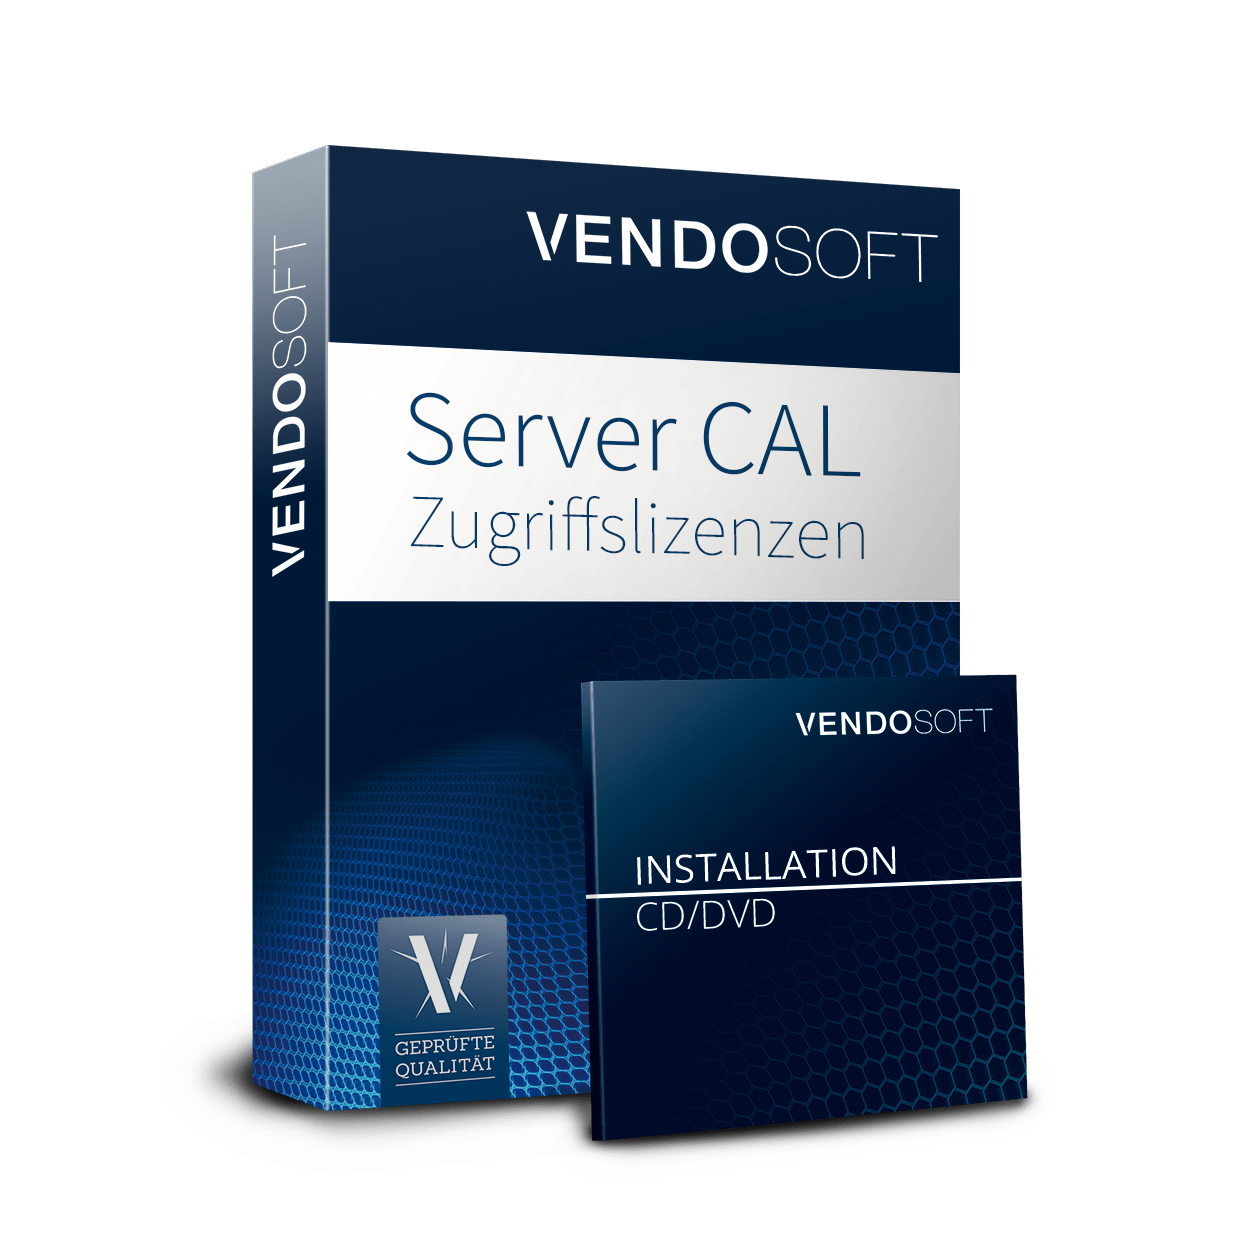 Server CAL Zugriffslizenzen gebraucht kaufen